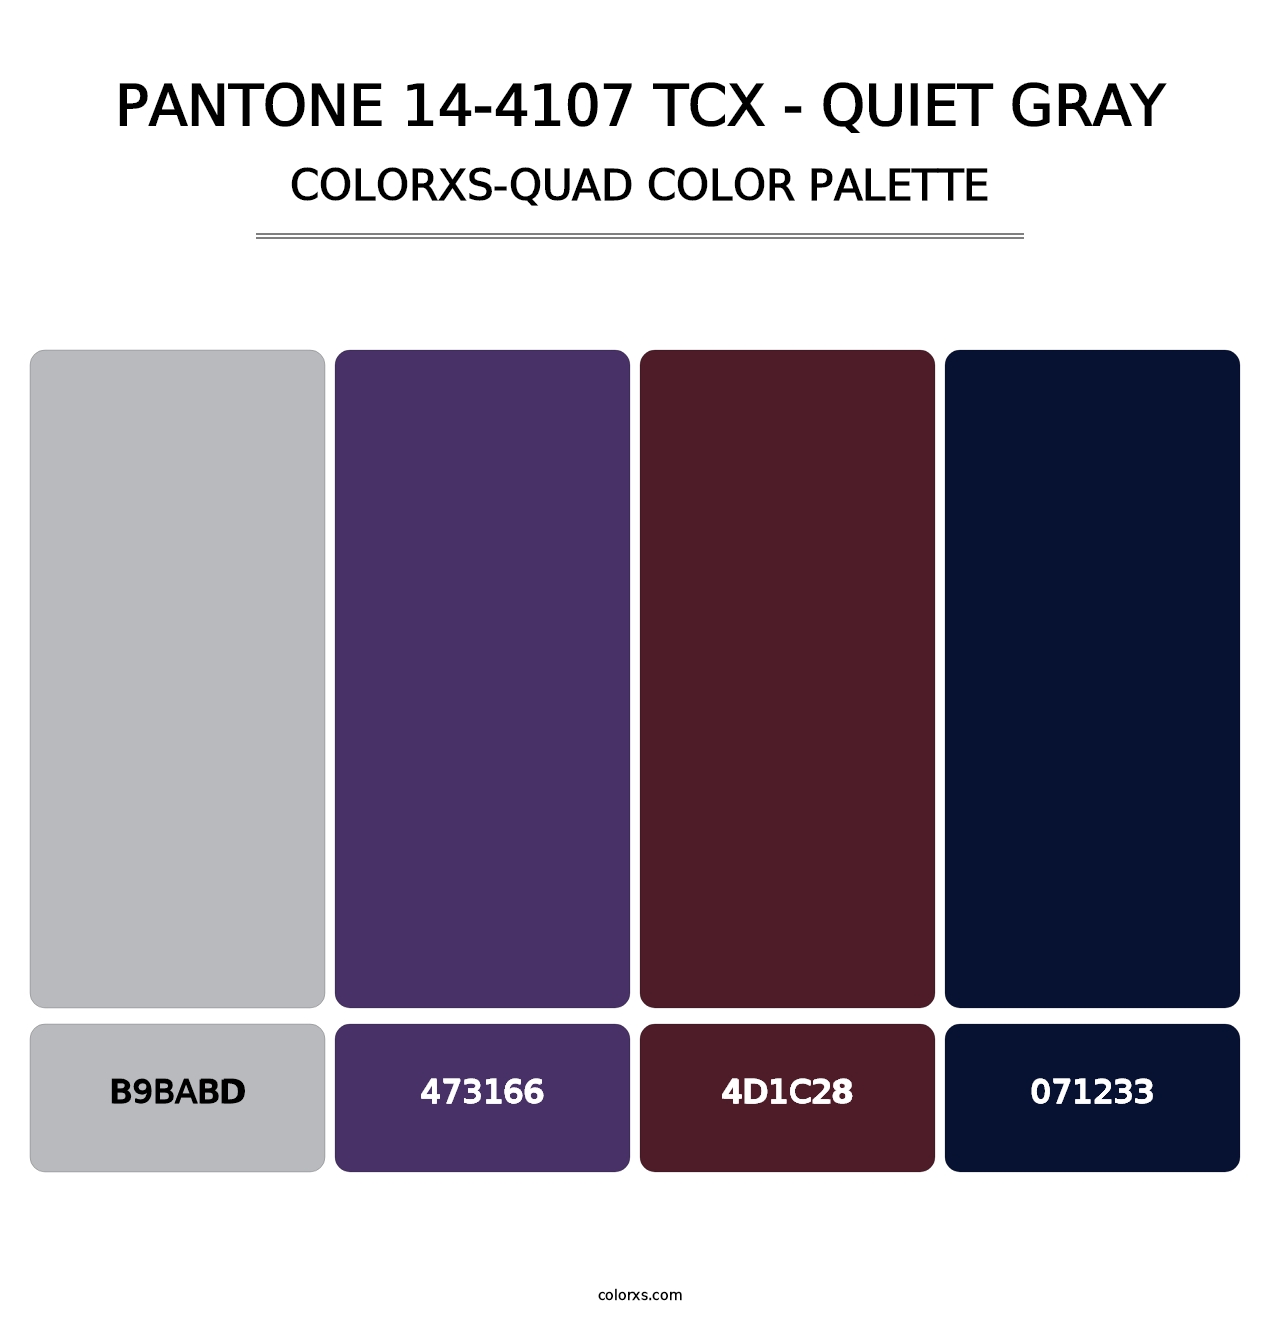 PANTONE 14-4107 TCX - Quiet Gray - Colorxs Quad Palette